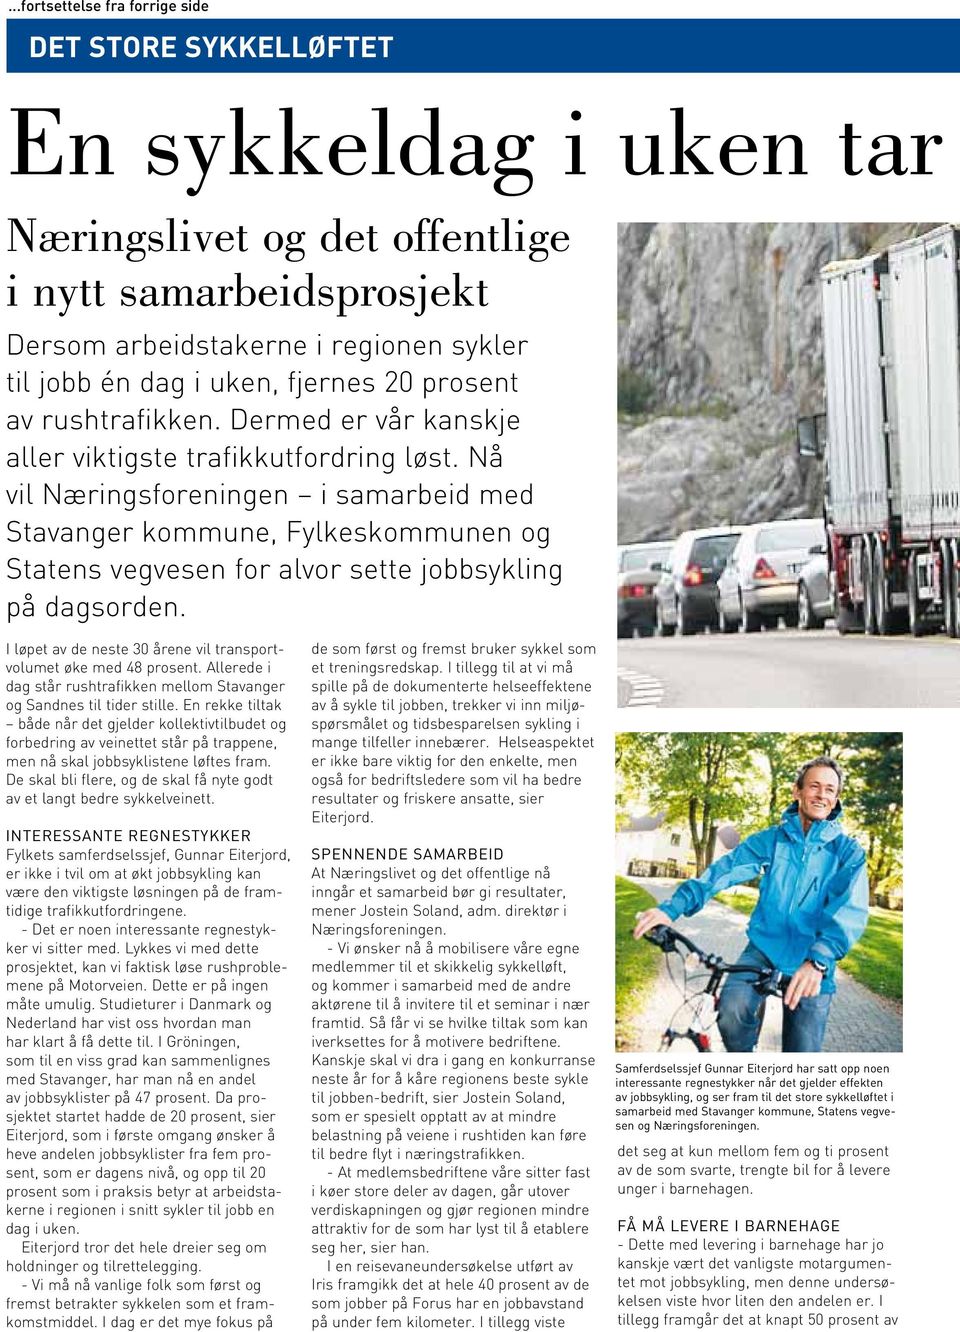 Nå vil Næringsforeningen i samarbeid med Stavanger kommune, Fylkeskommunen og Statens vegvesen for alvor sette jobbsykling på dagsorden.